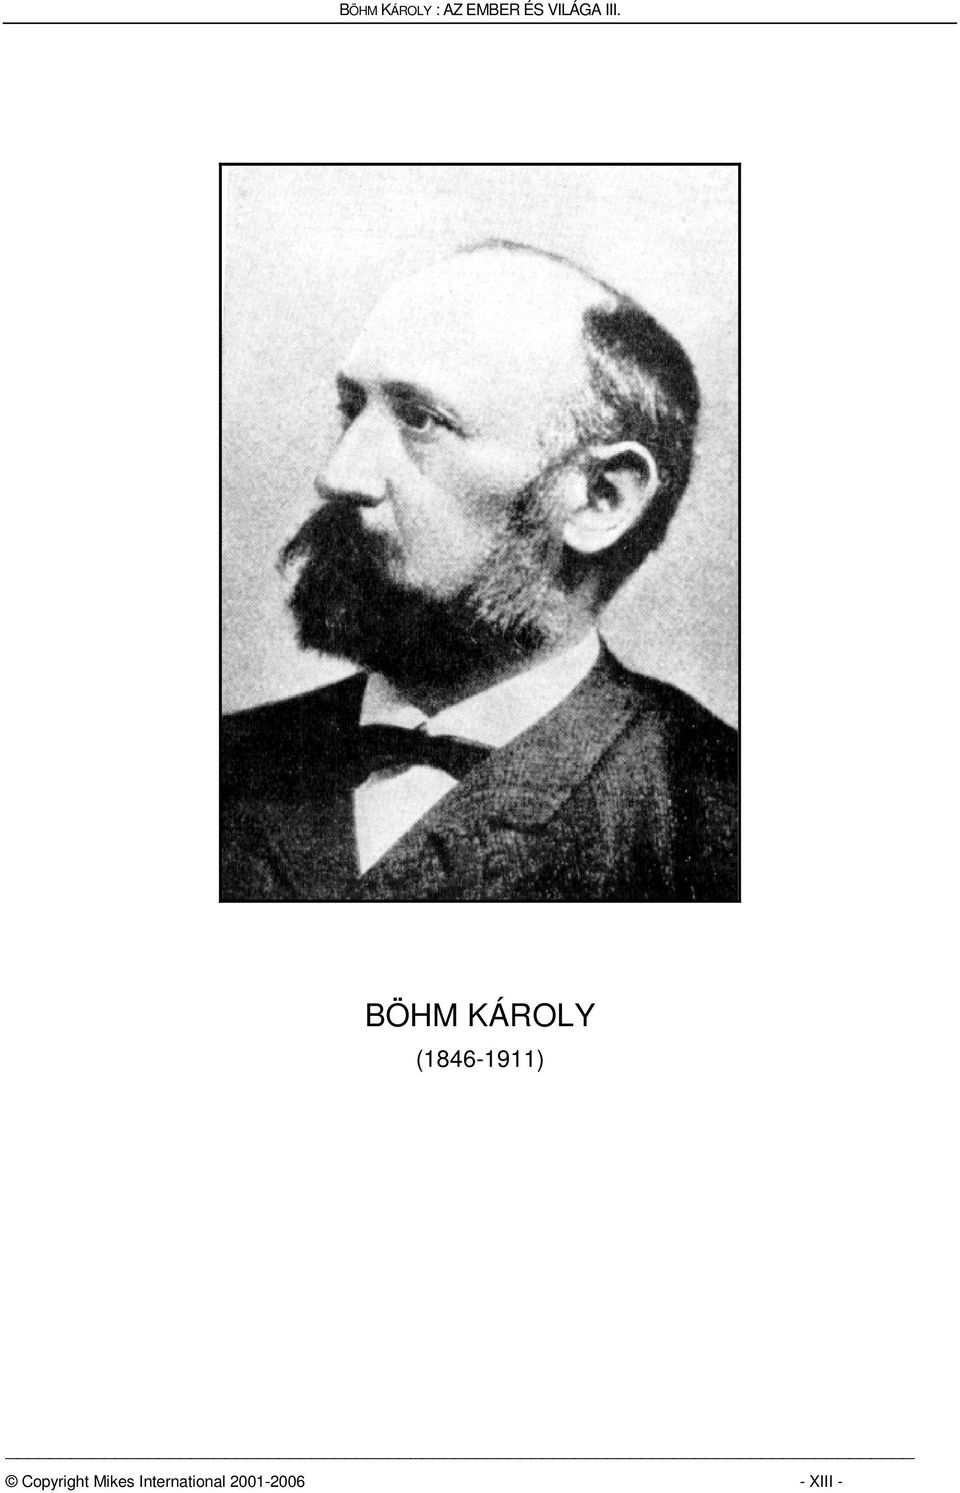 BÖHM KÁROLY (1846-1911)